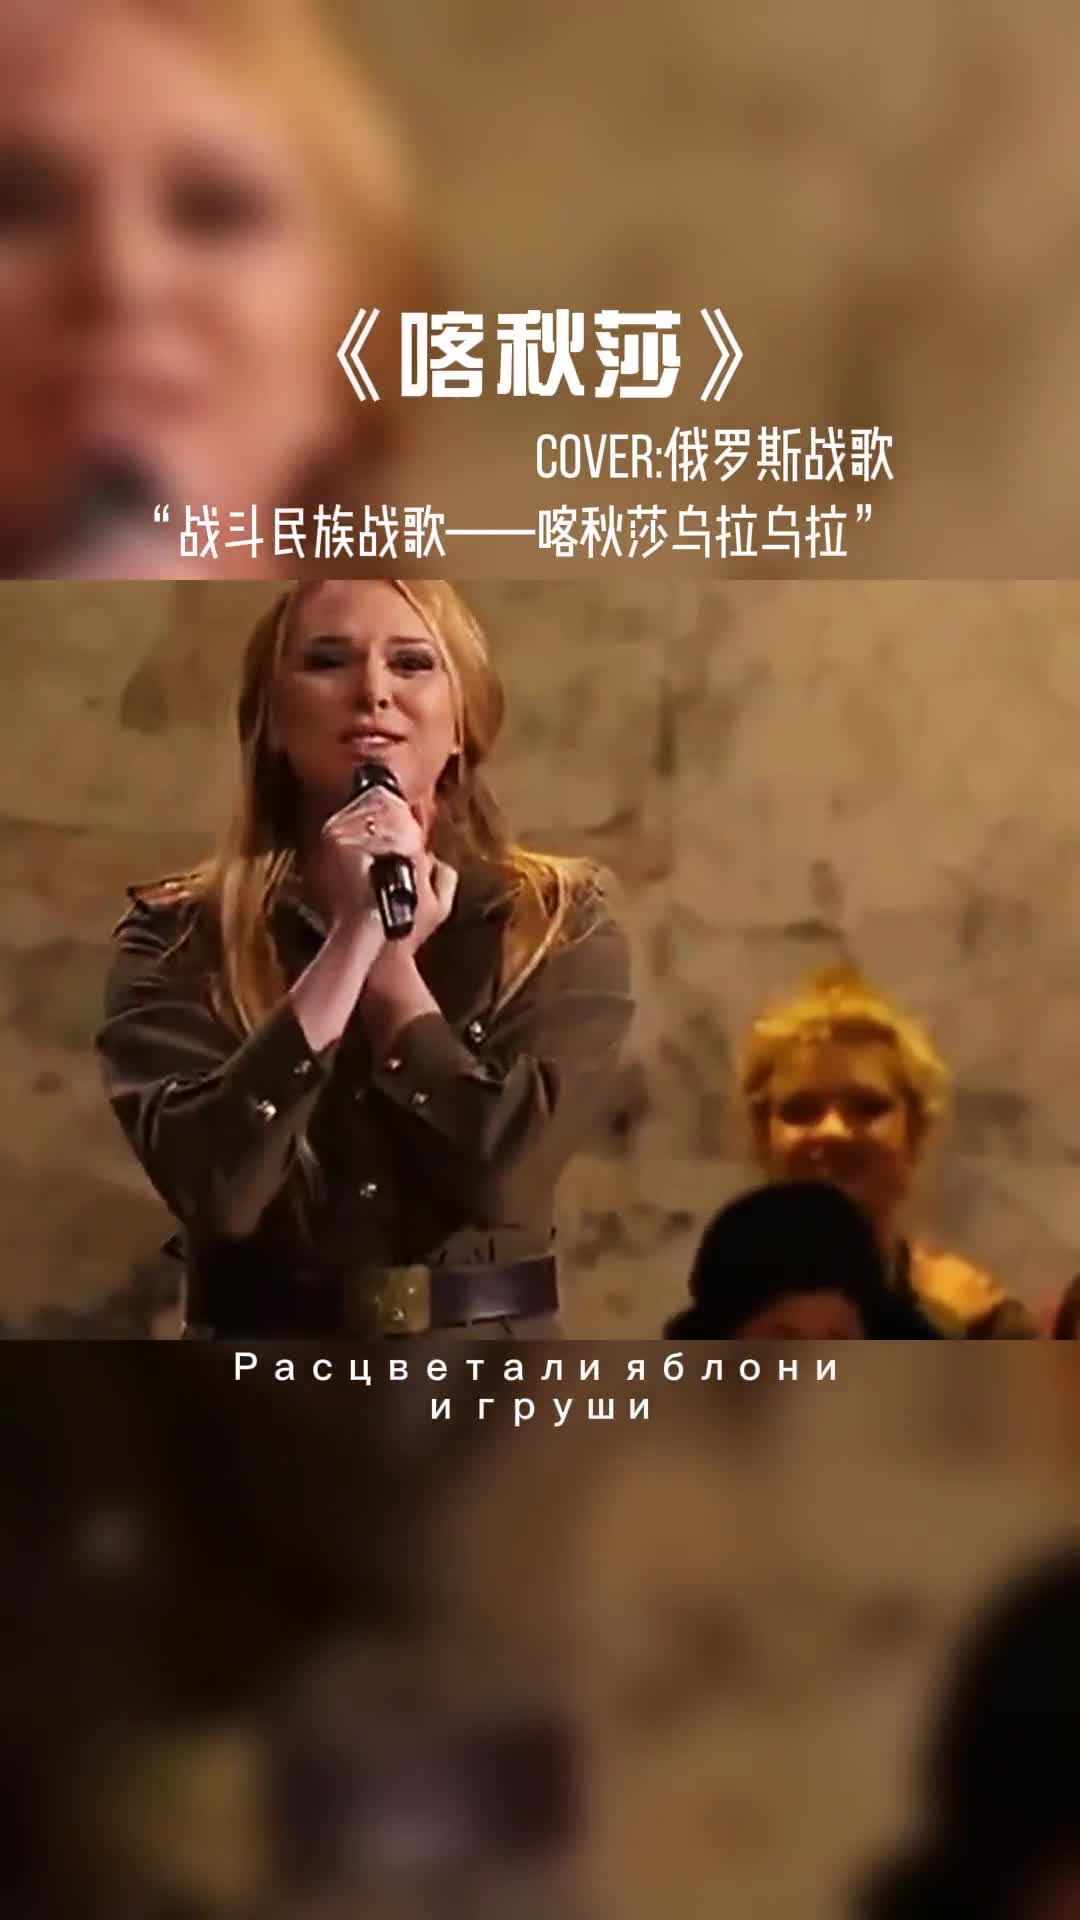 战斗民族战歌《喀秋莎》#音乐 #乌拉 #俄罗斯 #战斗民族